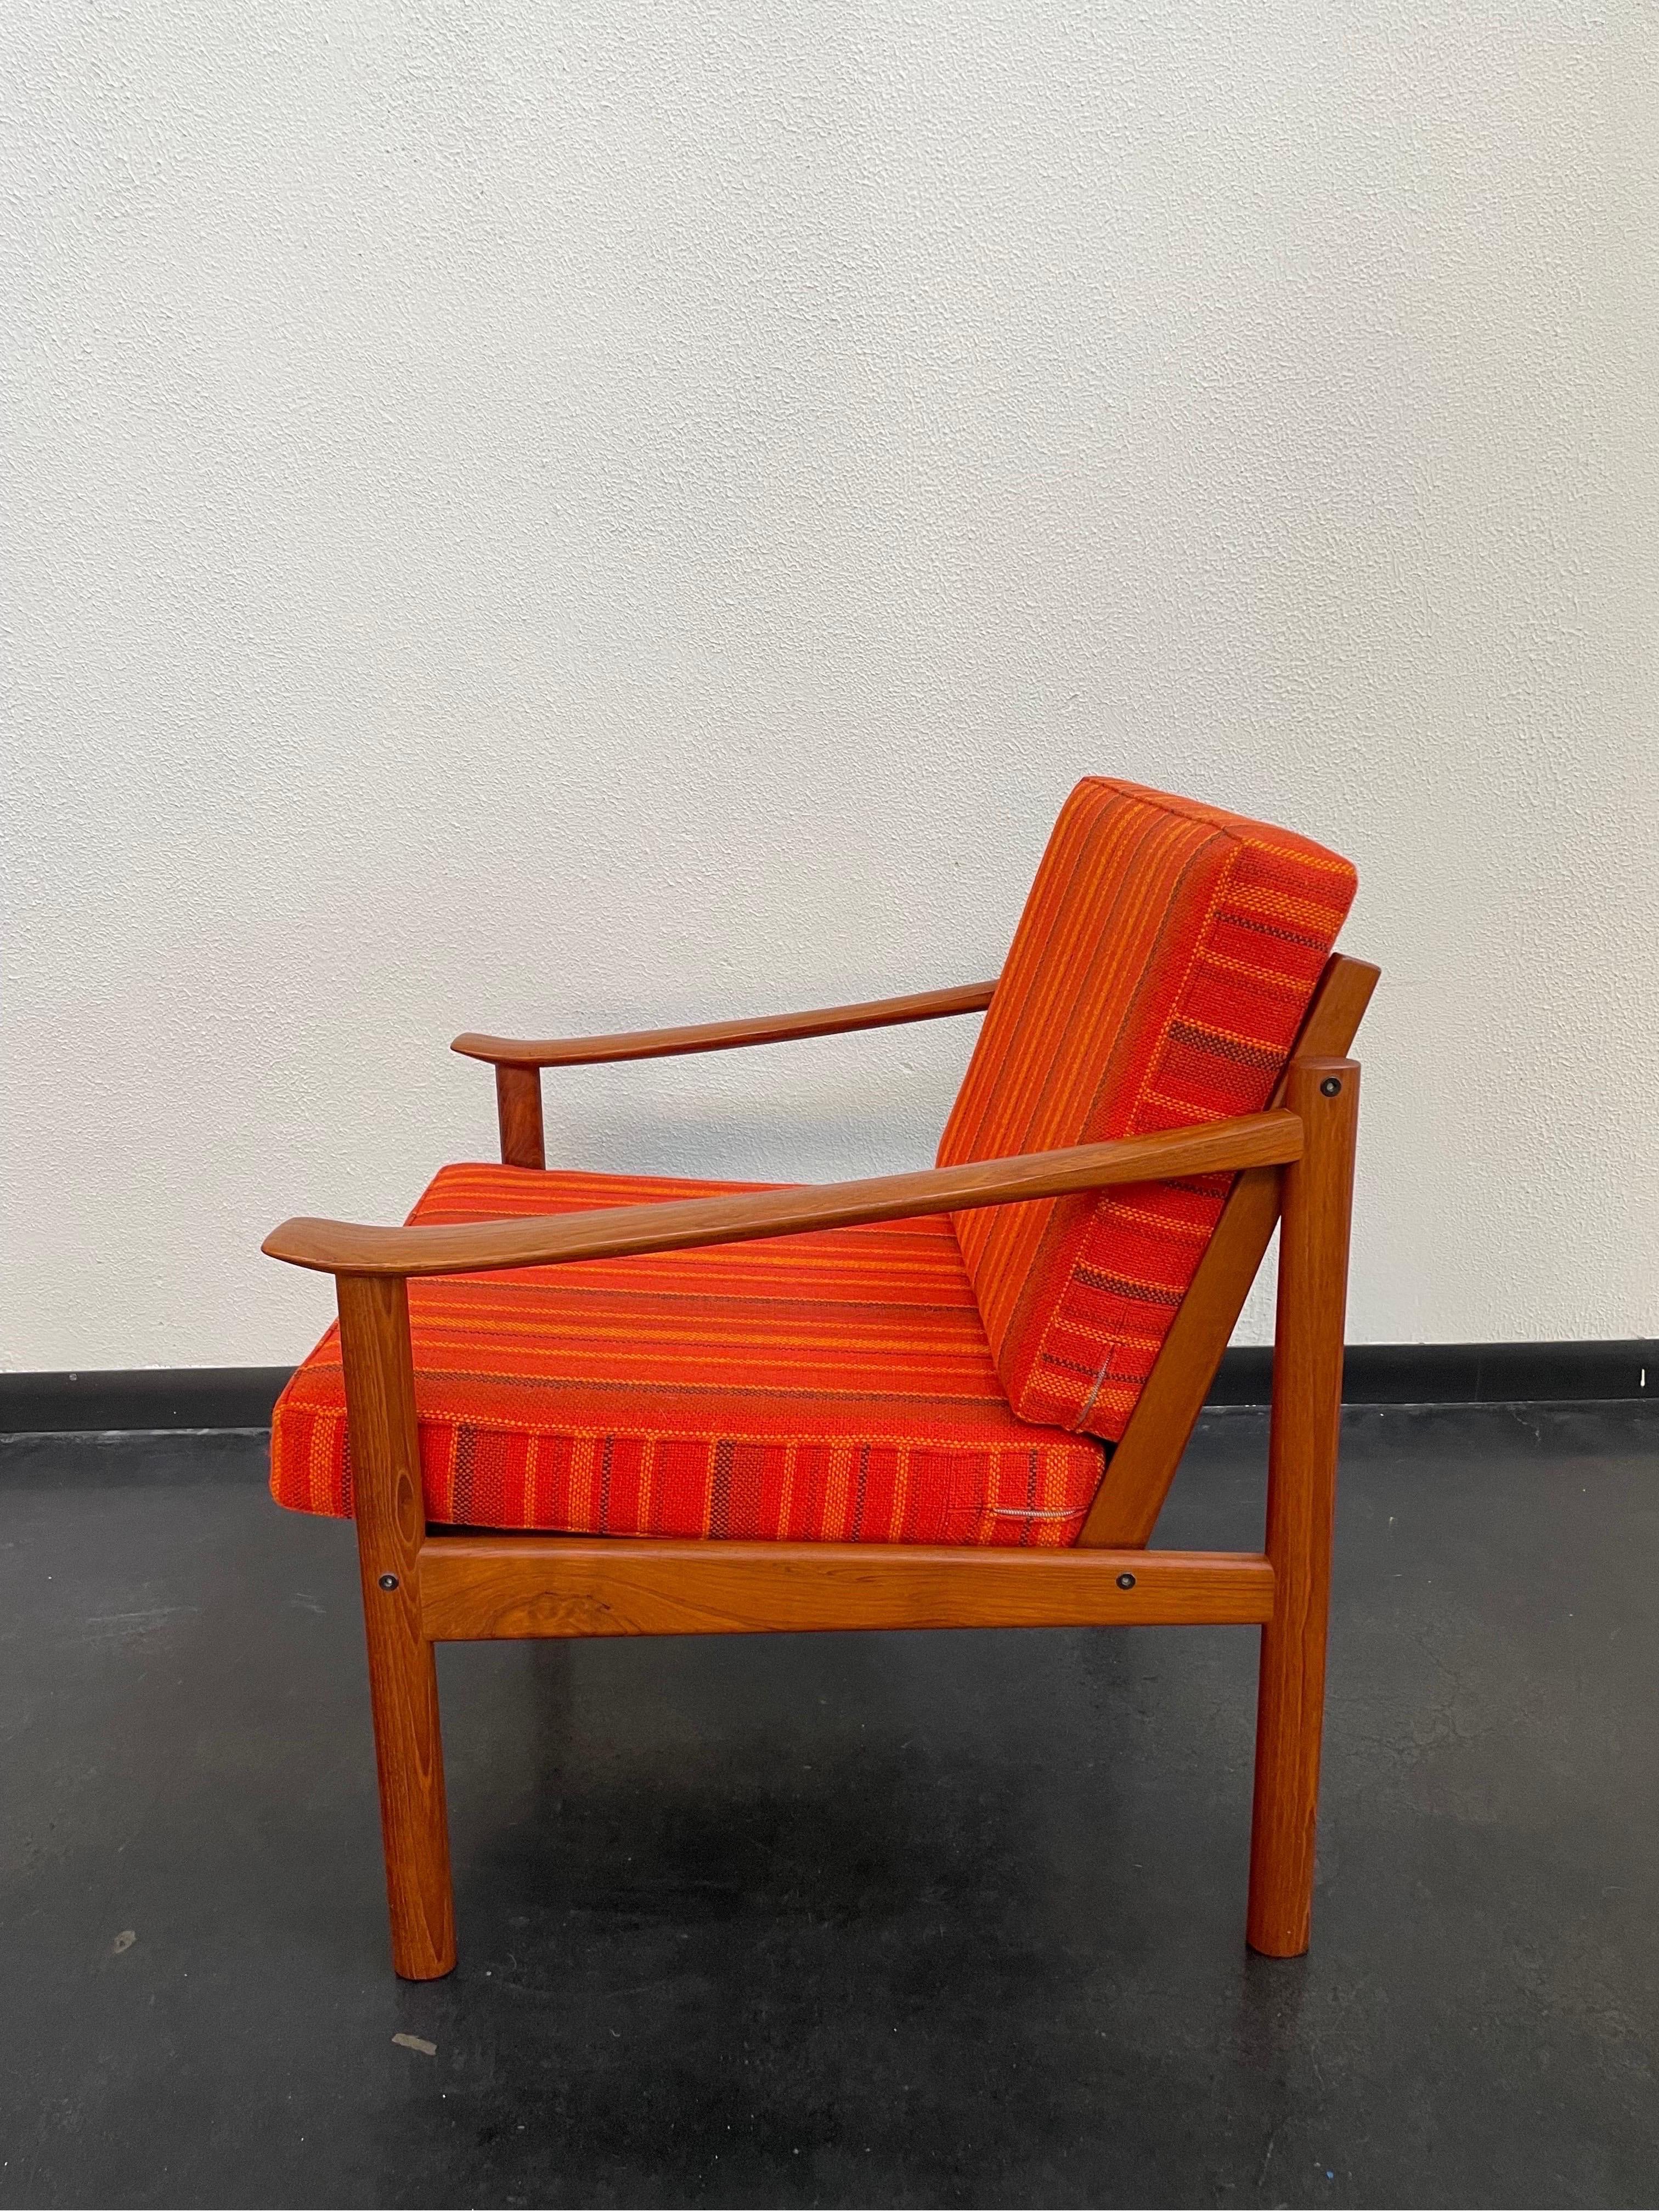 Danish Mid-Century Modern Peter Hvidt for Soborg lounge chair.